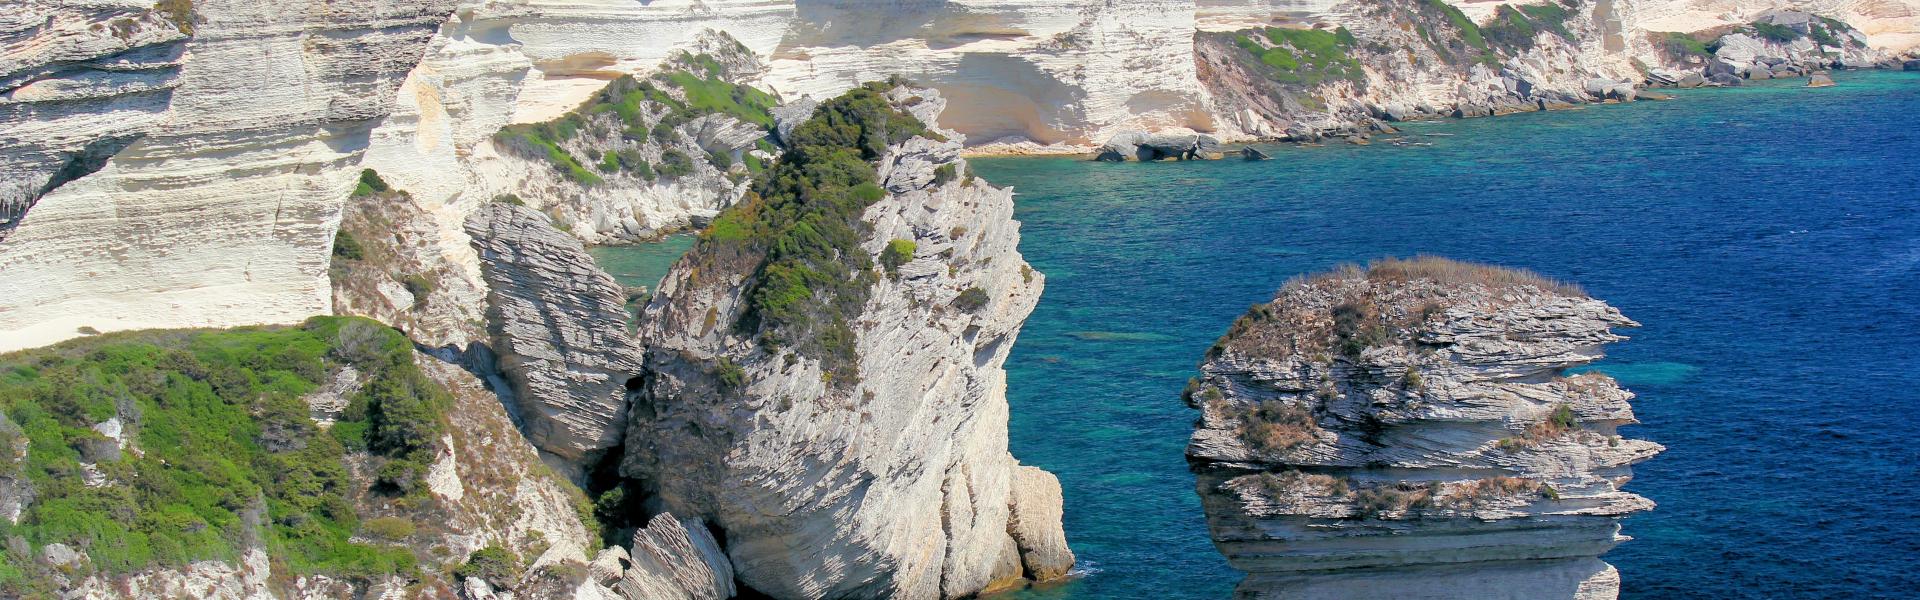 Location de vacances à Poggio-Mezzana - Haute-Corse - amivac